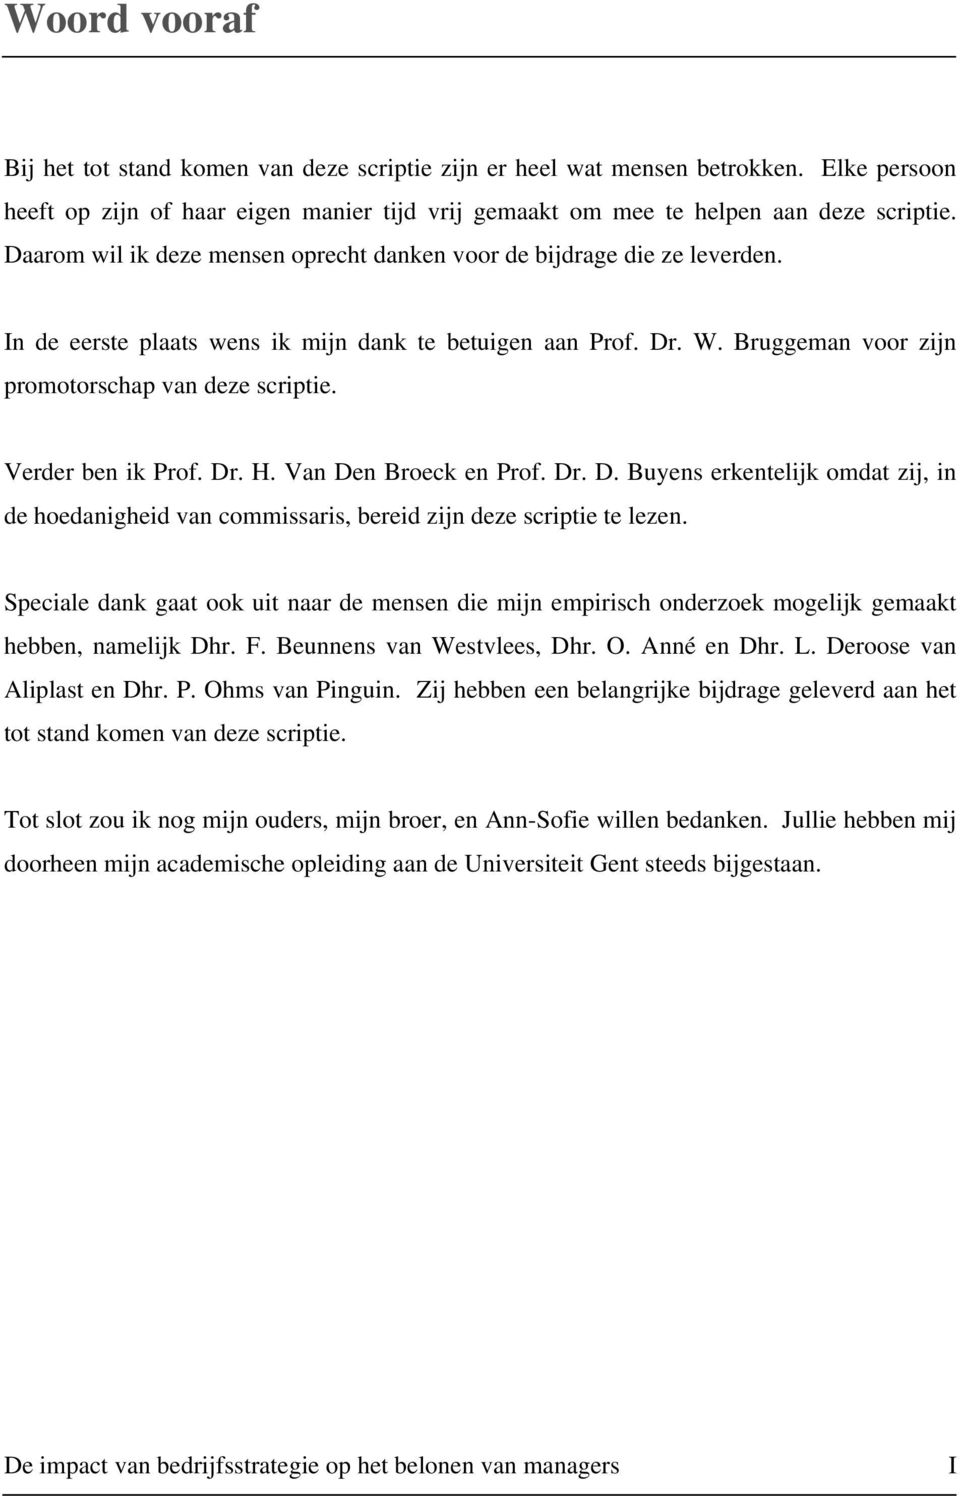 Verder ben ik Prof. Dr. H. Van Den Broeck en Prof. Dr. D. Buyens erkentelijk omdat zij, in de hoedanigheid van commissaris, bereid zijn deze scriptie te lezen.